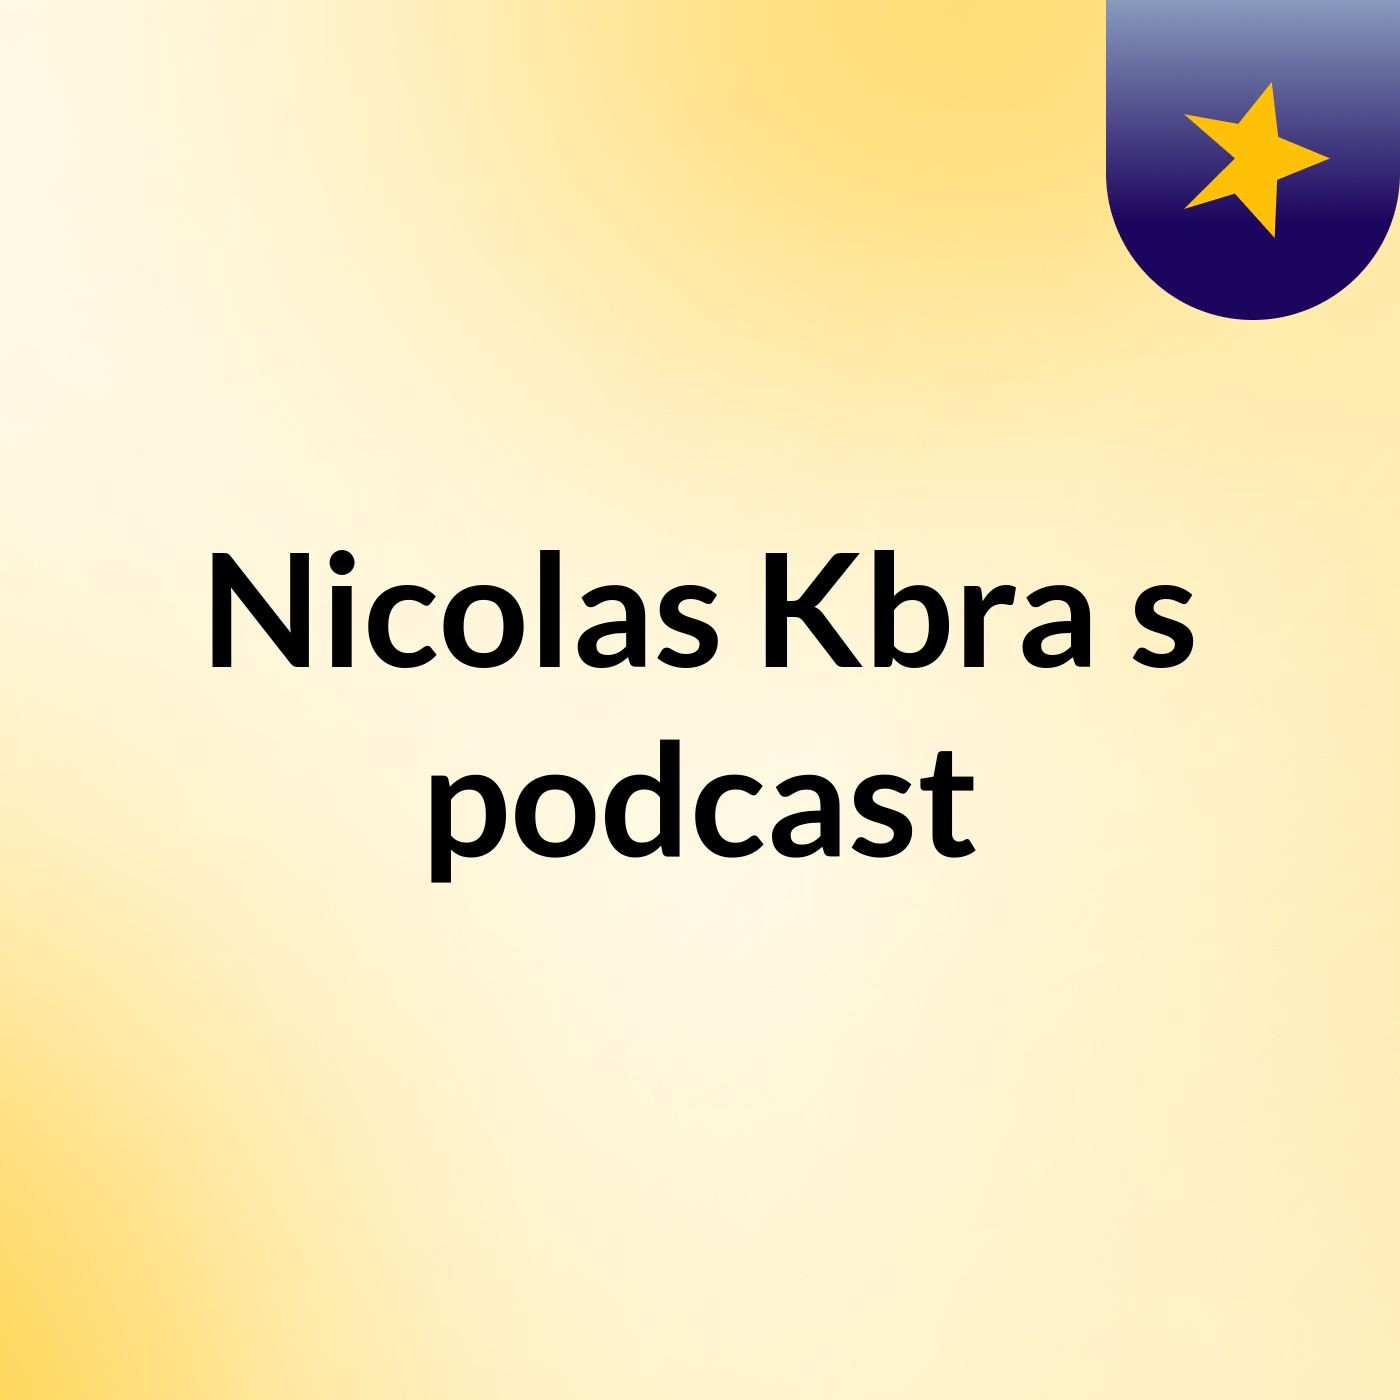 Nicolas Kbra's podcast